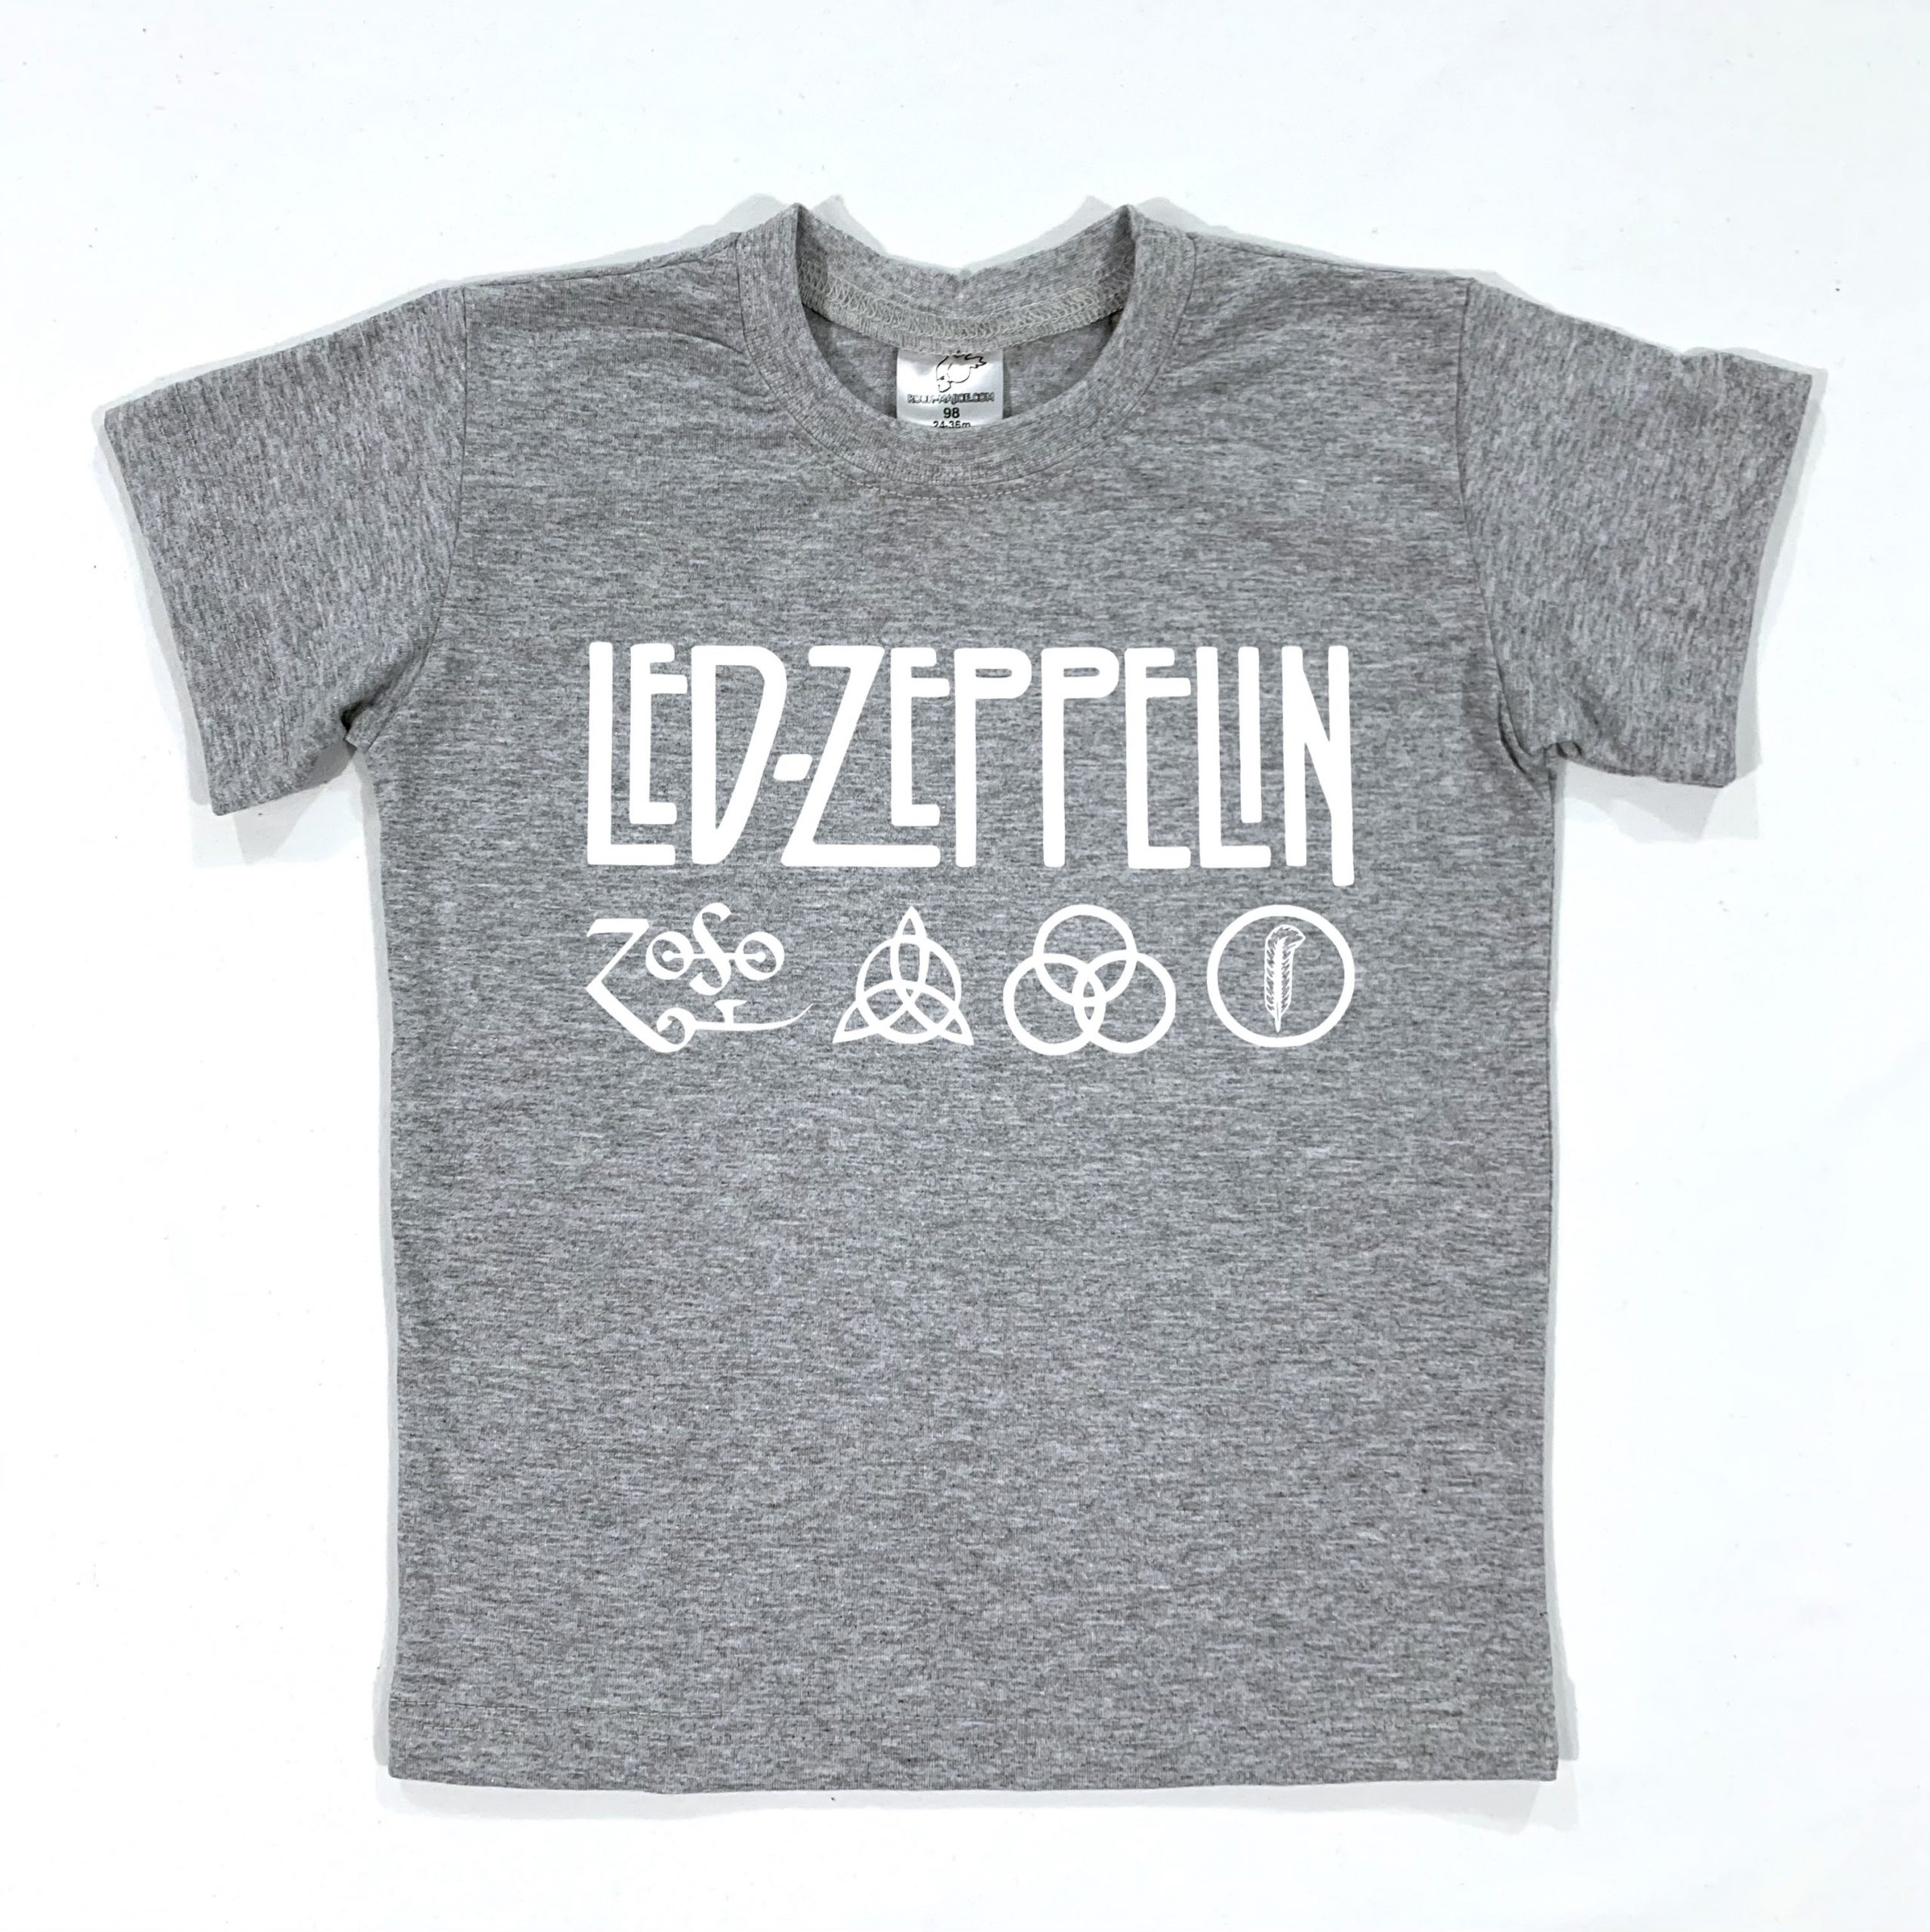 Led Zeppelin (Dečija Majica) - Dečije Majice, Dečiji Program